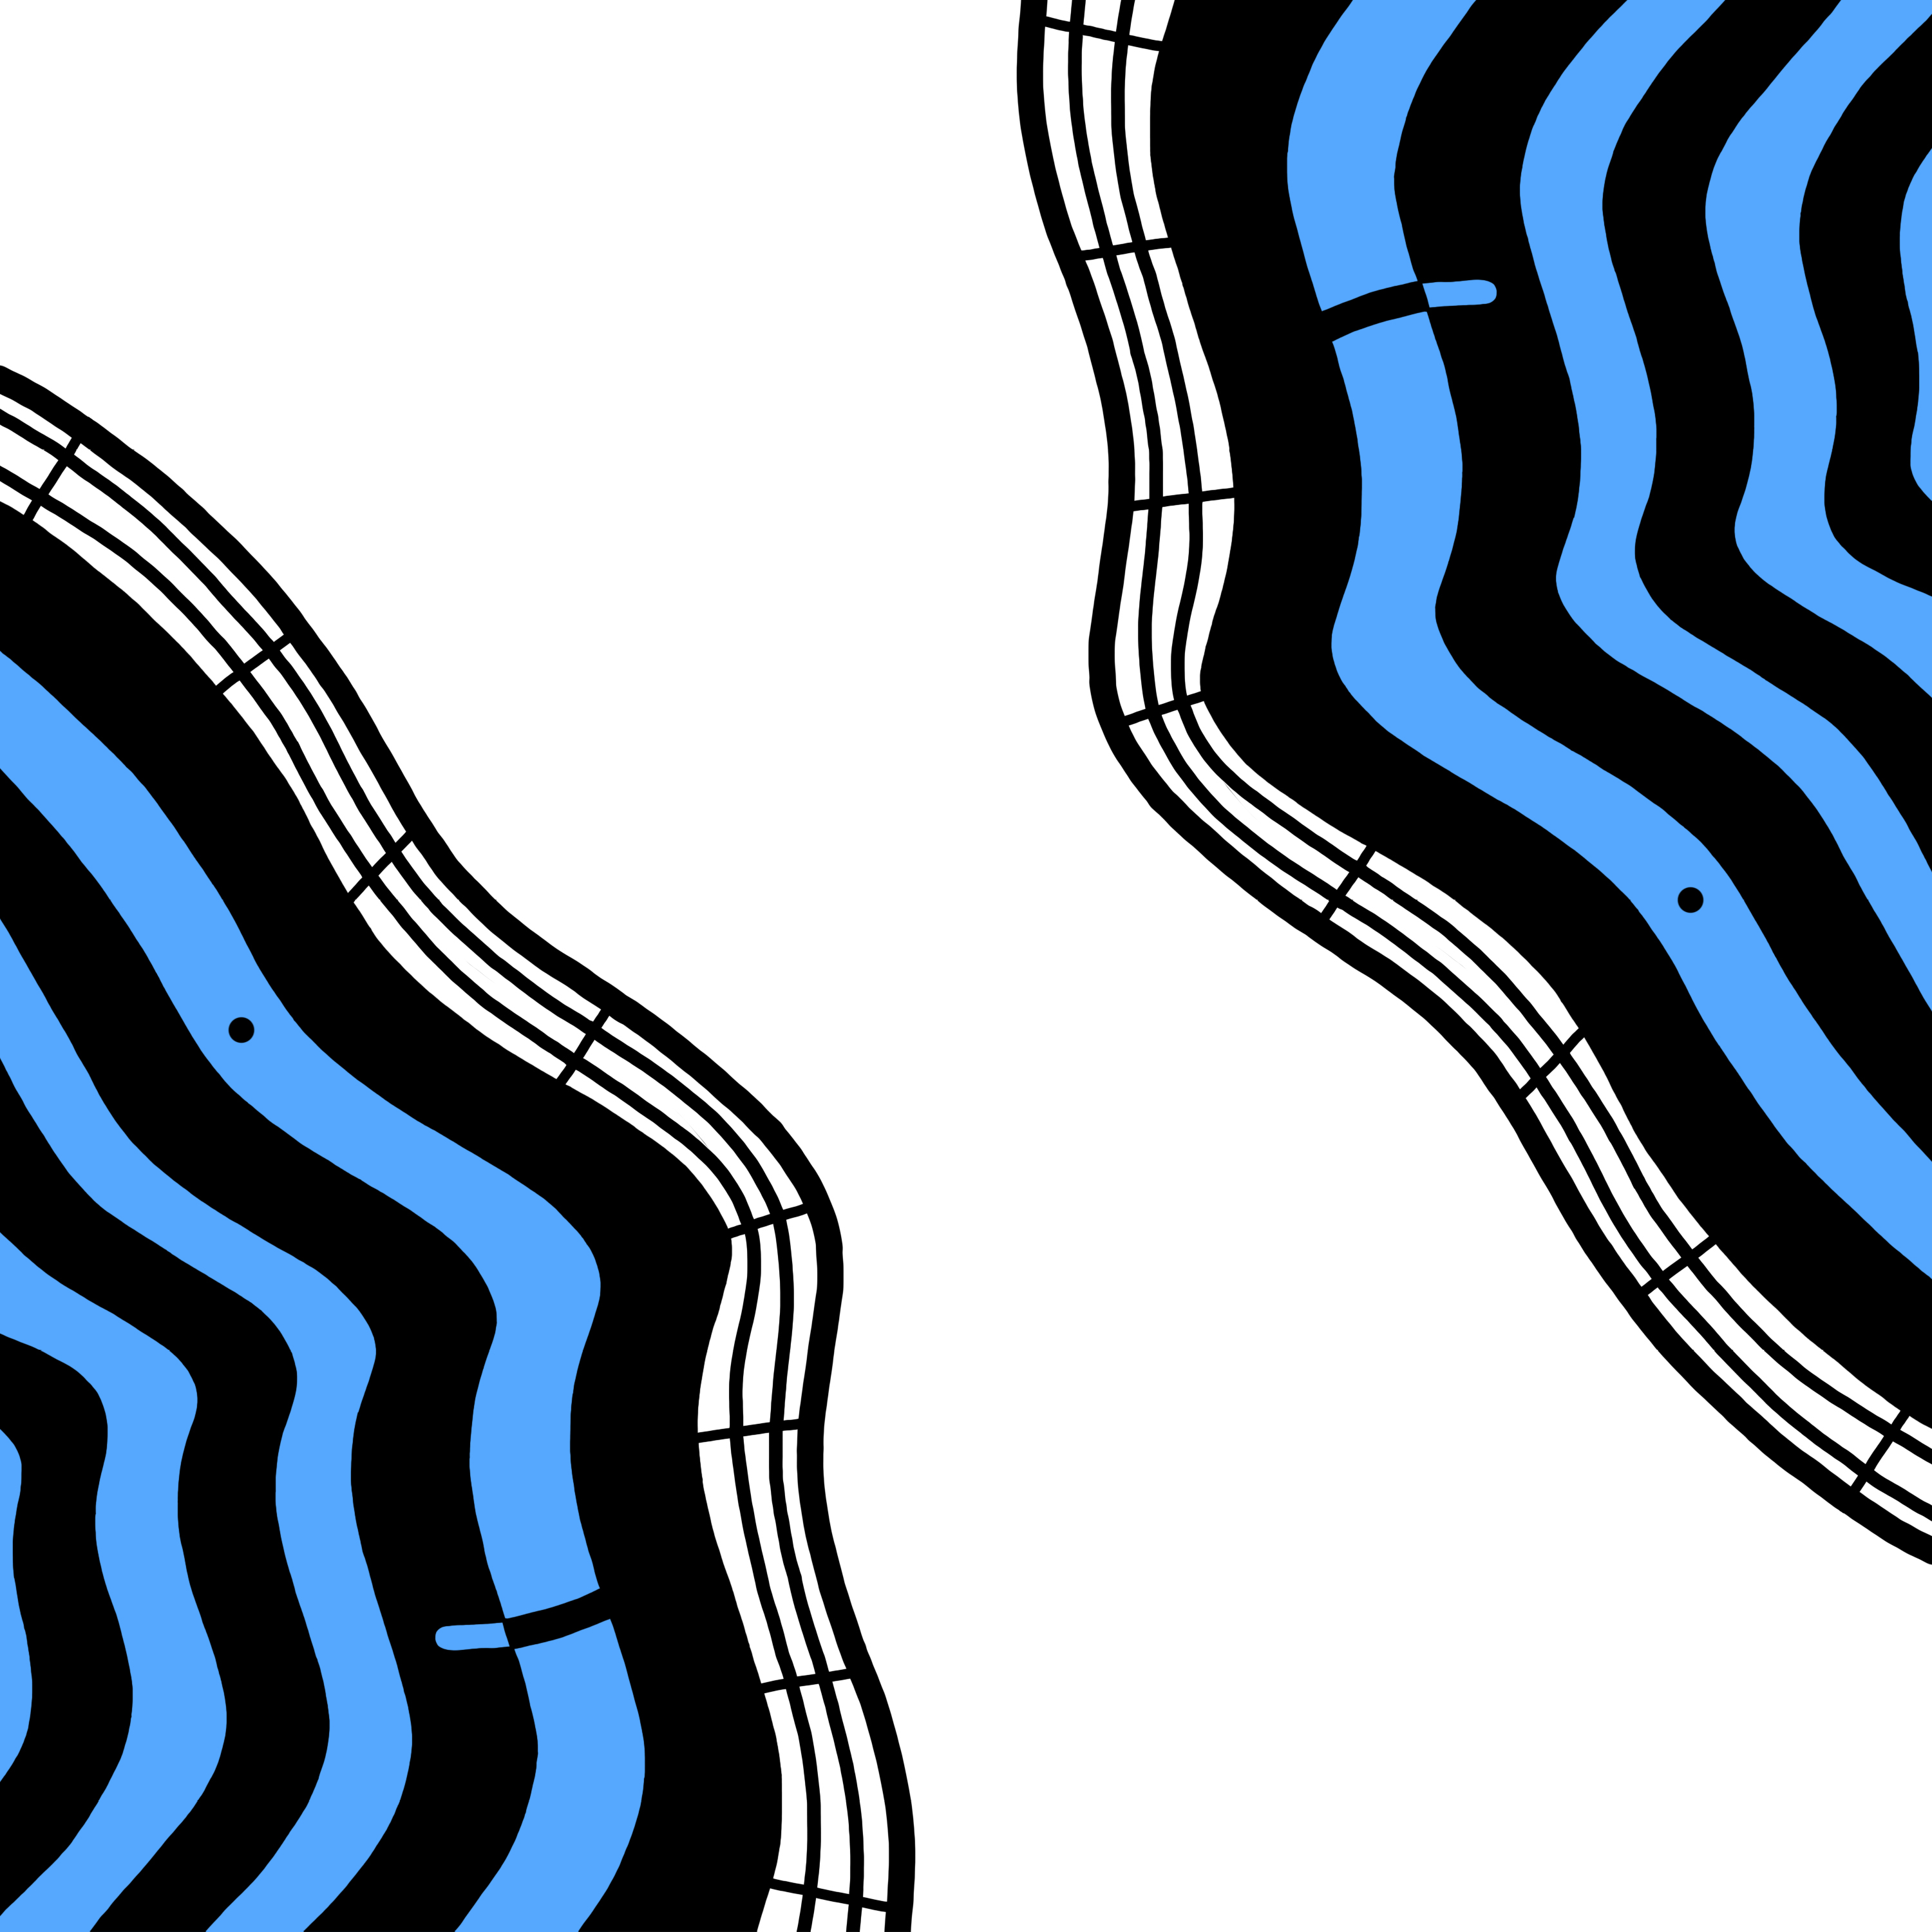 FOYERFUNK Logo in blau: Zwei Gesichter, die der Form des Foyers nachempfunden sind, schauen sich an.